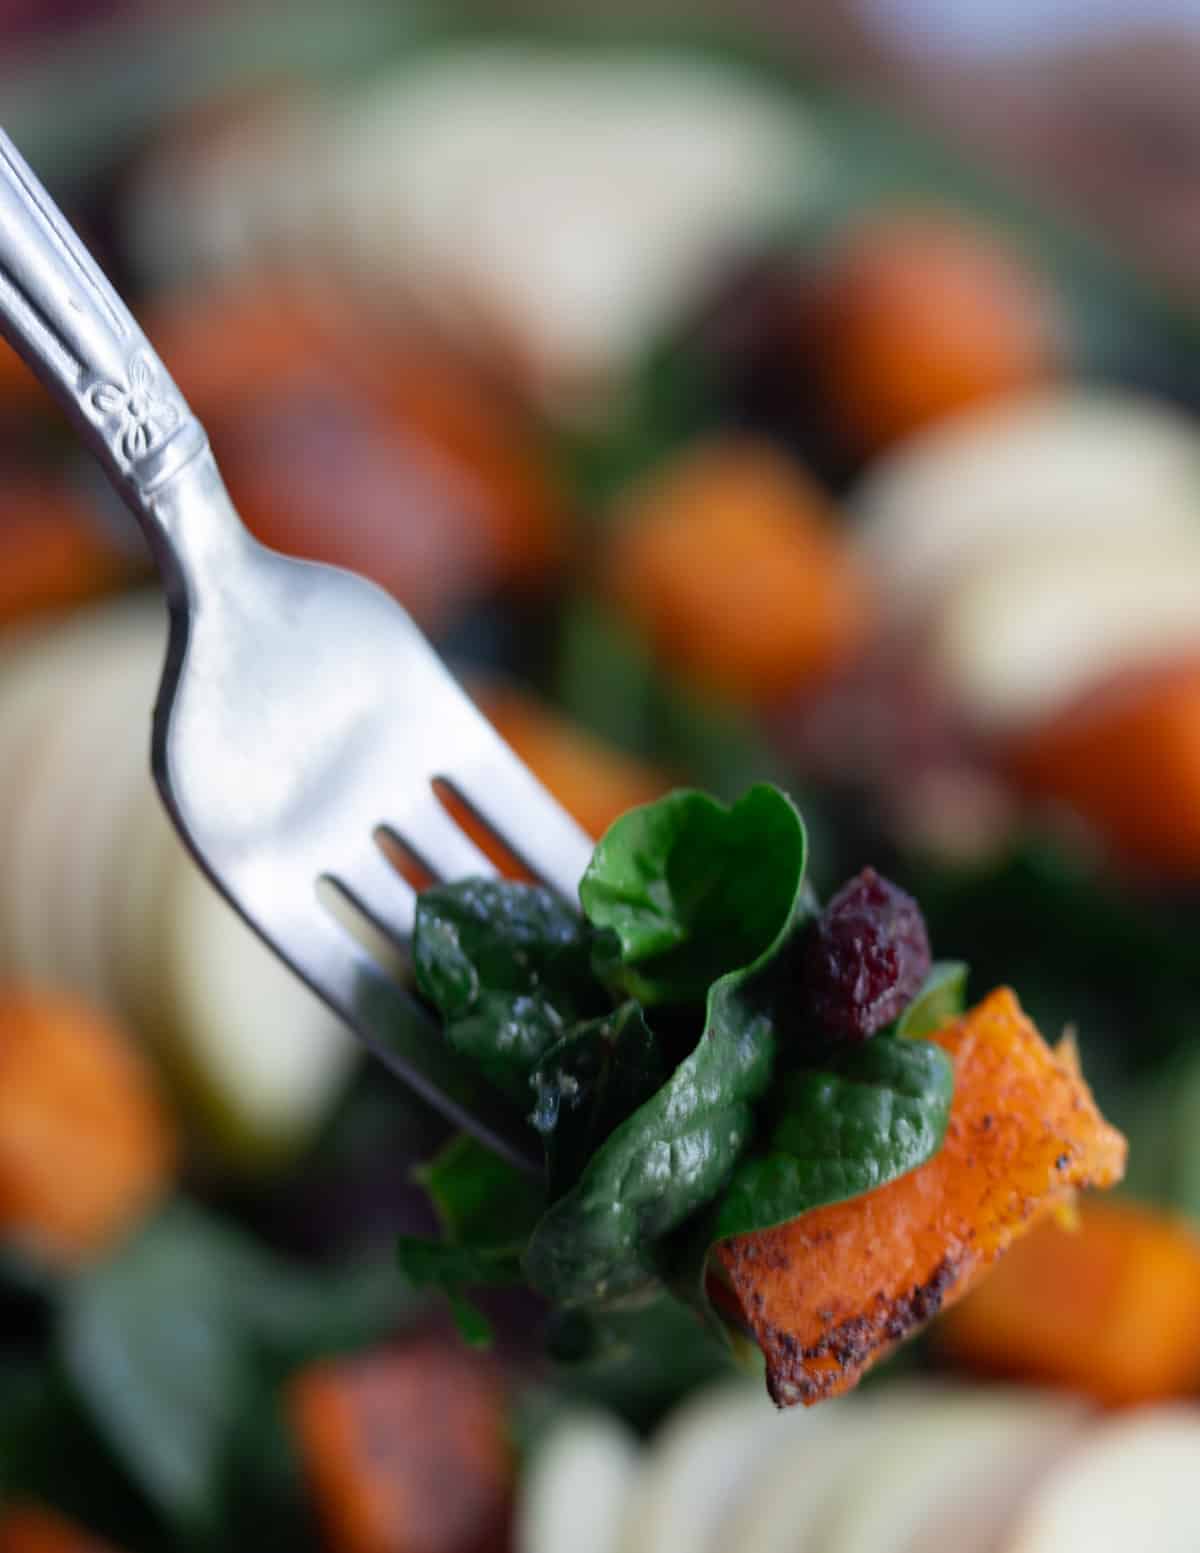 Fall Kale salad bite on fork.
